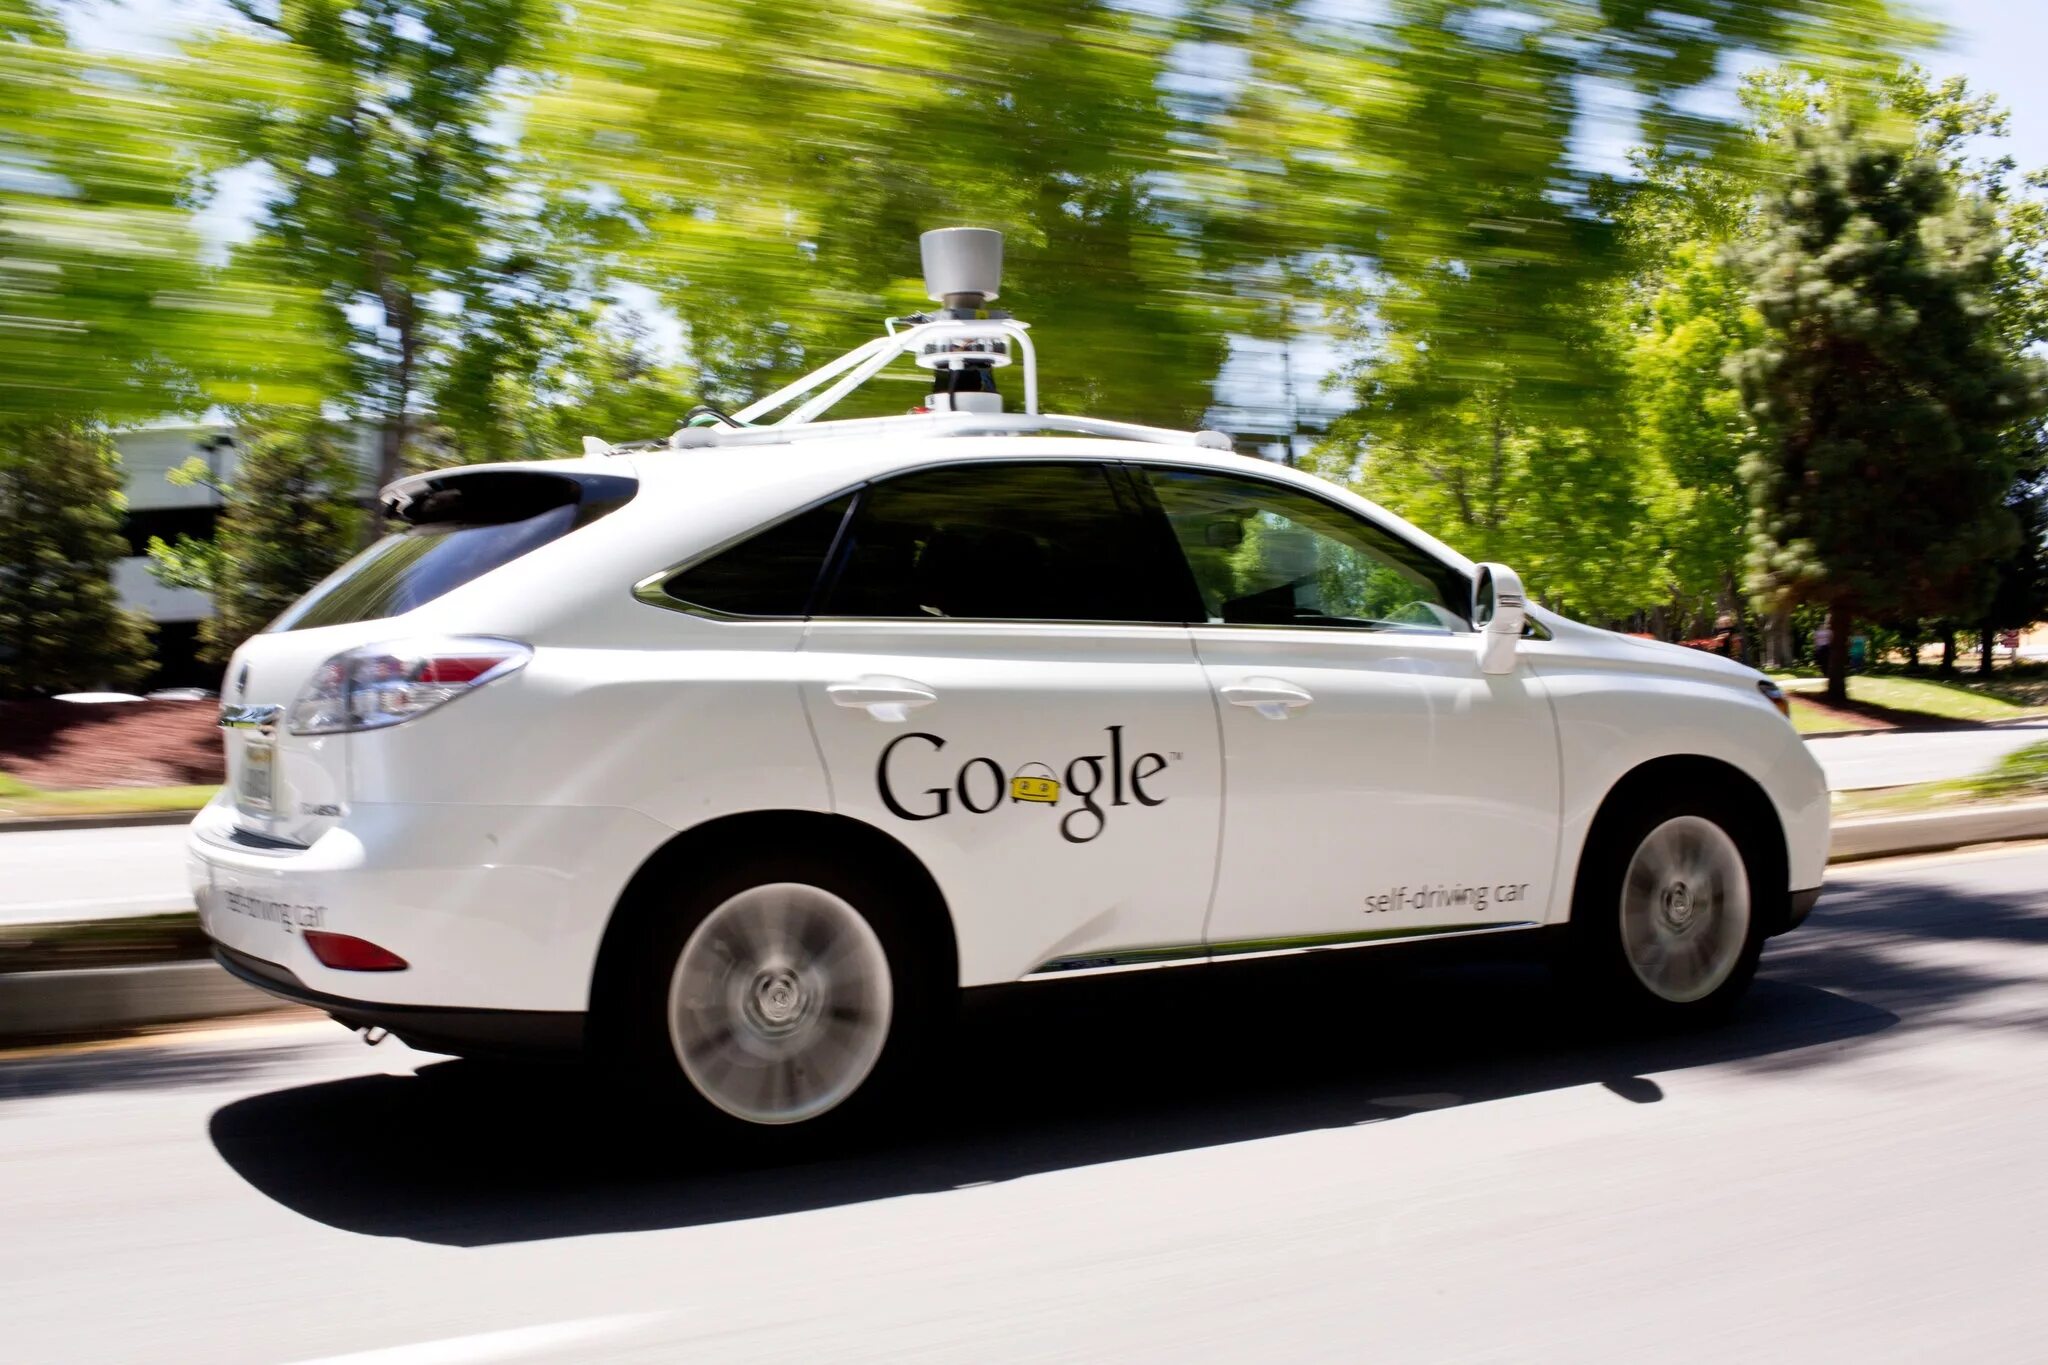 Unmanned vehicles. Беспилотный автомобиль Google. Беспелотны йавтомобиль. Без пилотный автомобиль. Машина с автопилотом.